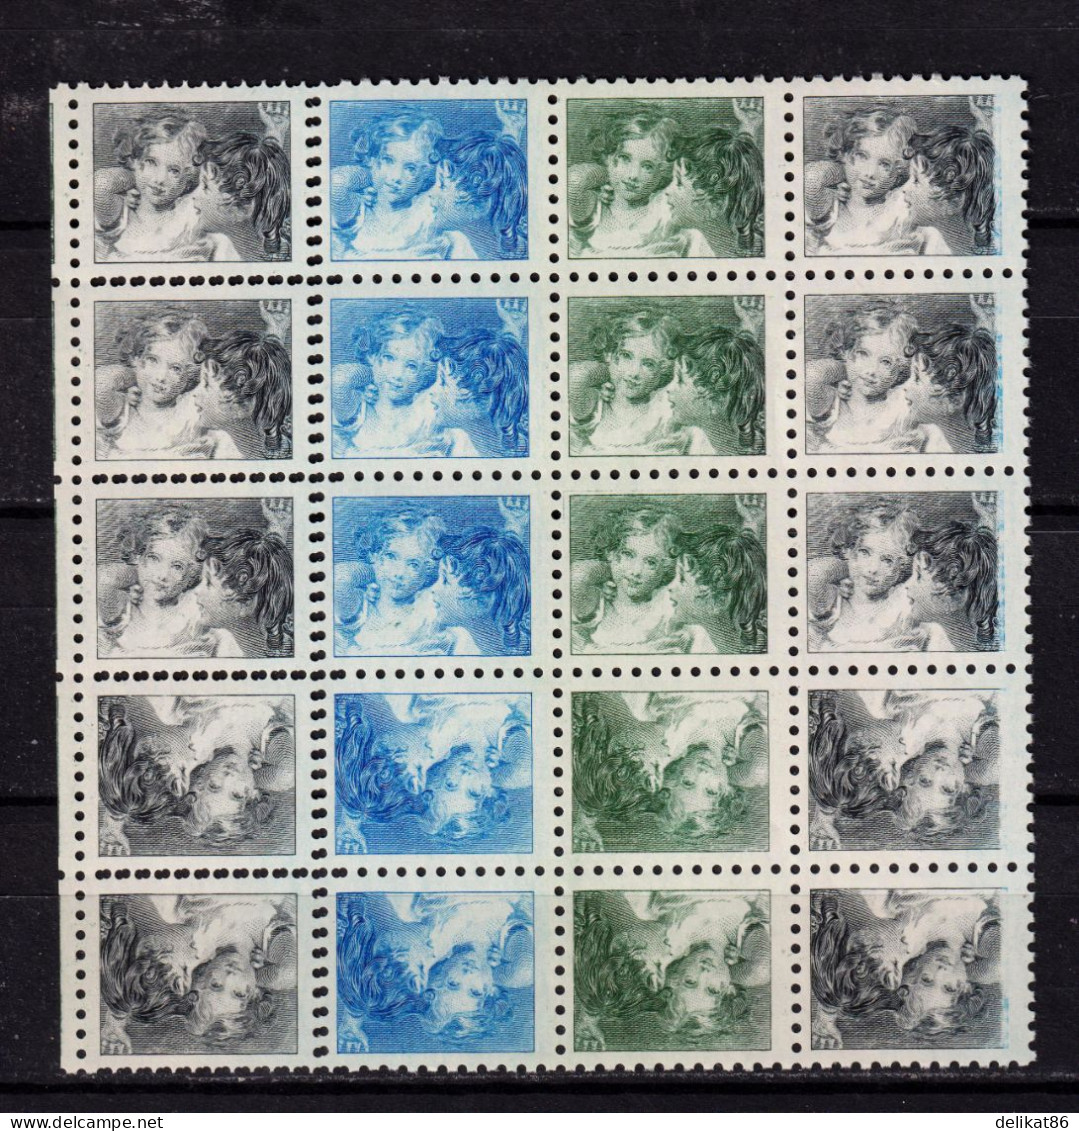 Probedruck Test Stamp Maschinprobe Specimen Canada 1935 Baby Sister - Probe- Und Nachdrucke